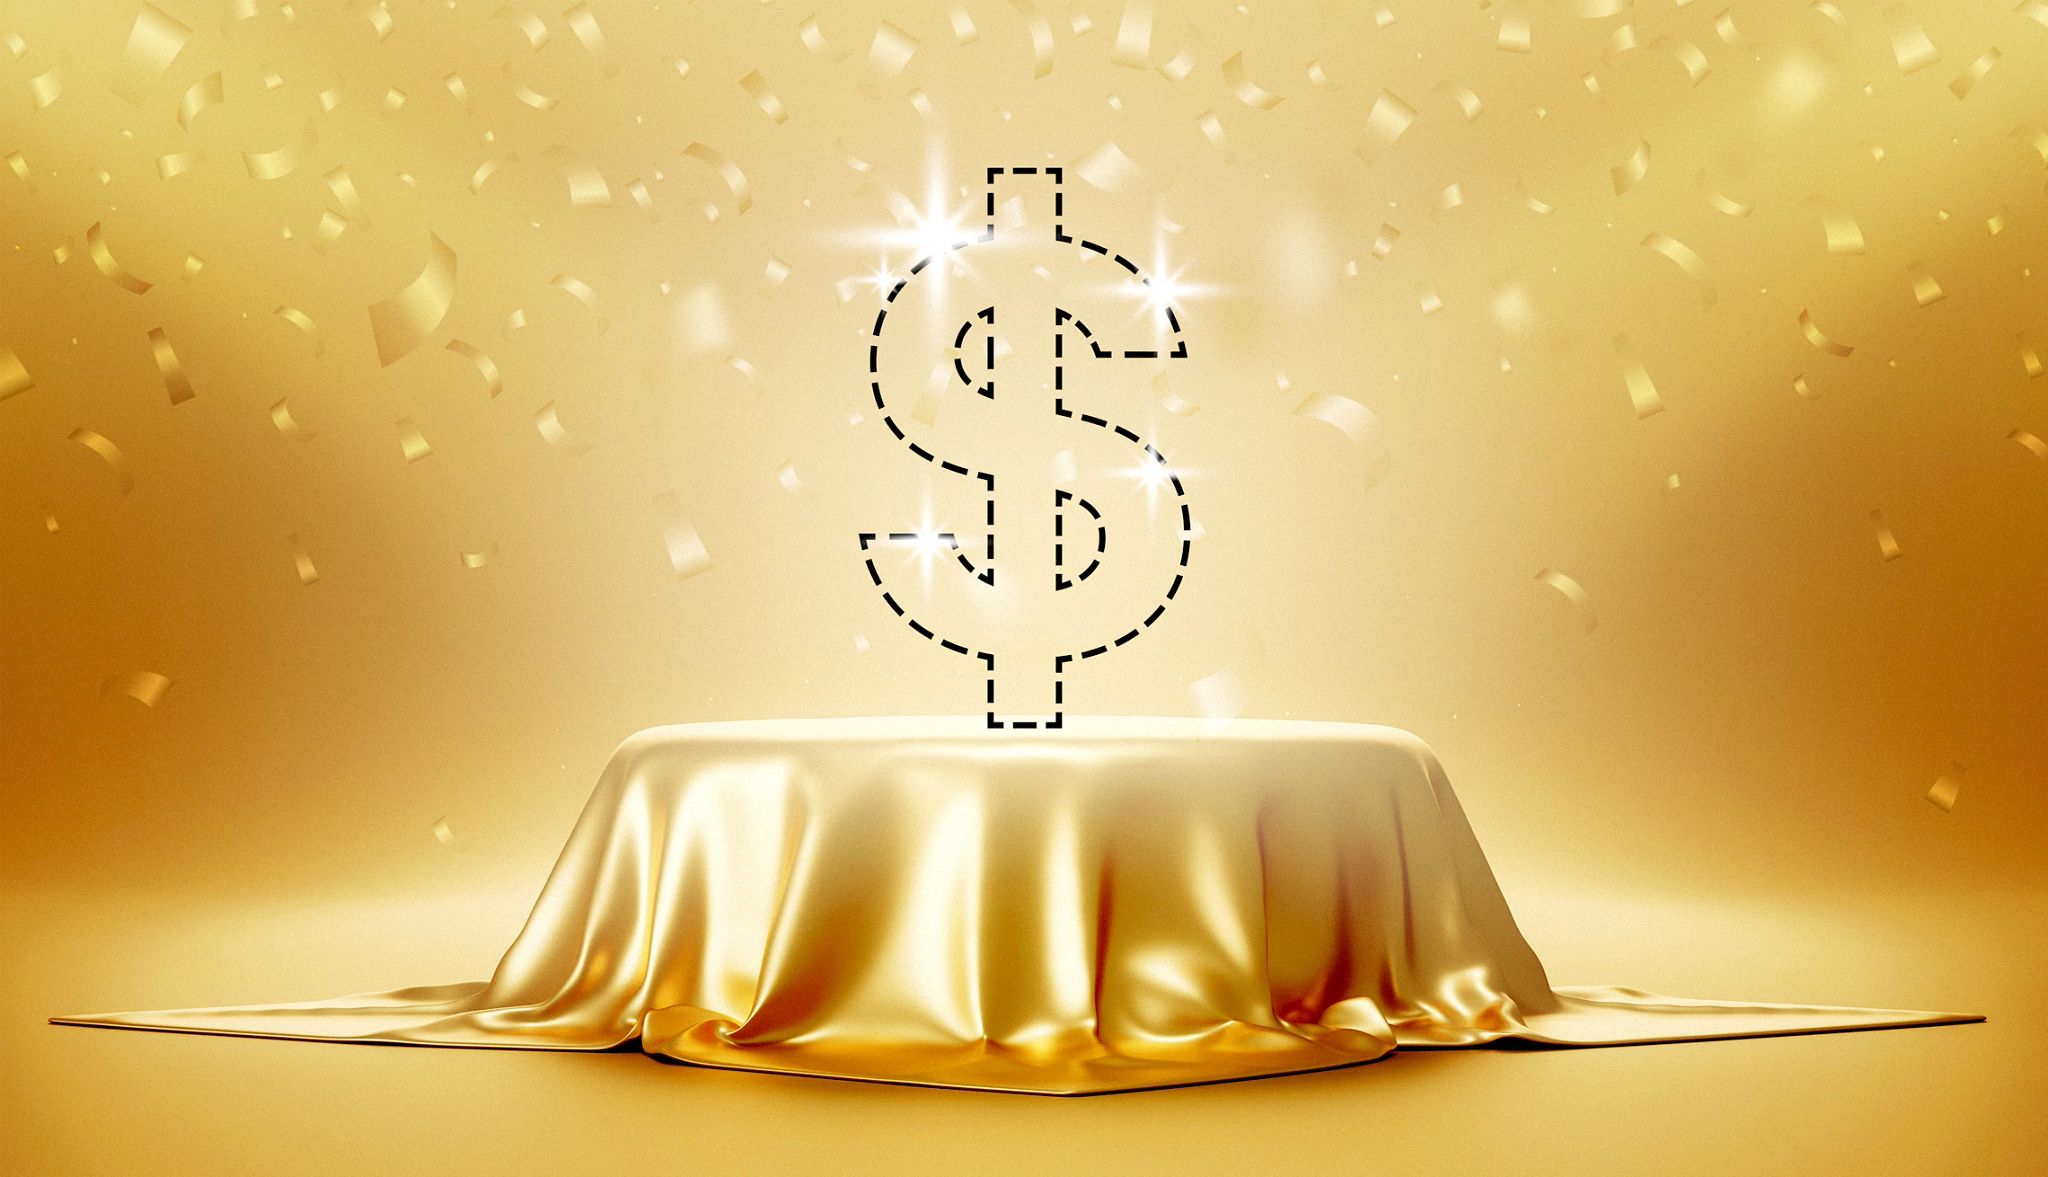 un signo de dólar flota sobre una tela dorada que cubre a un objeto